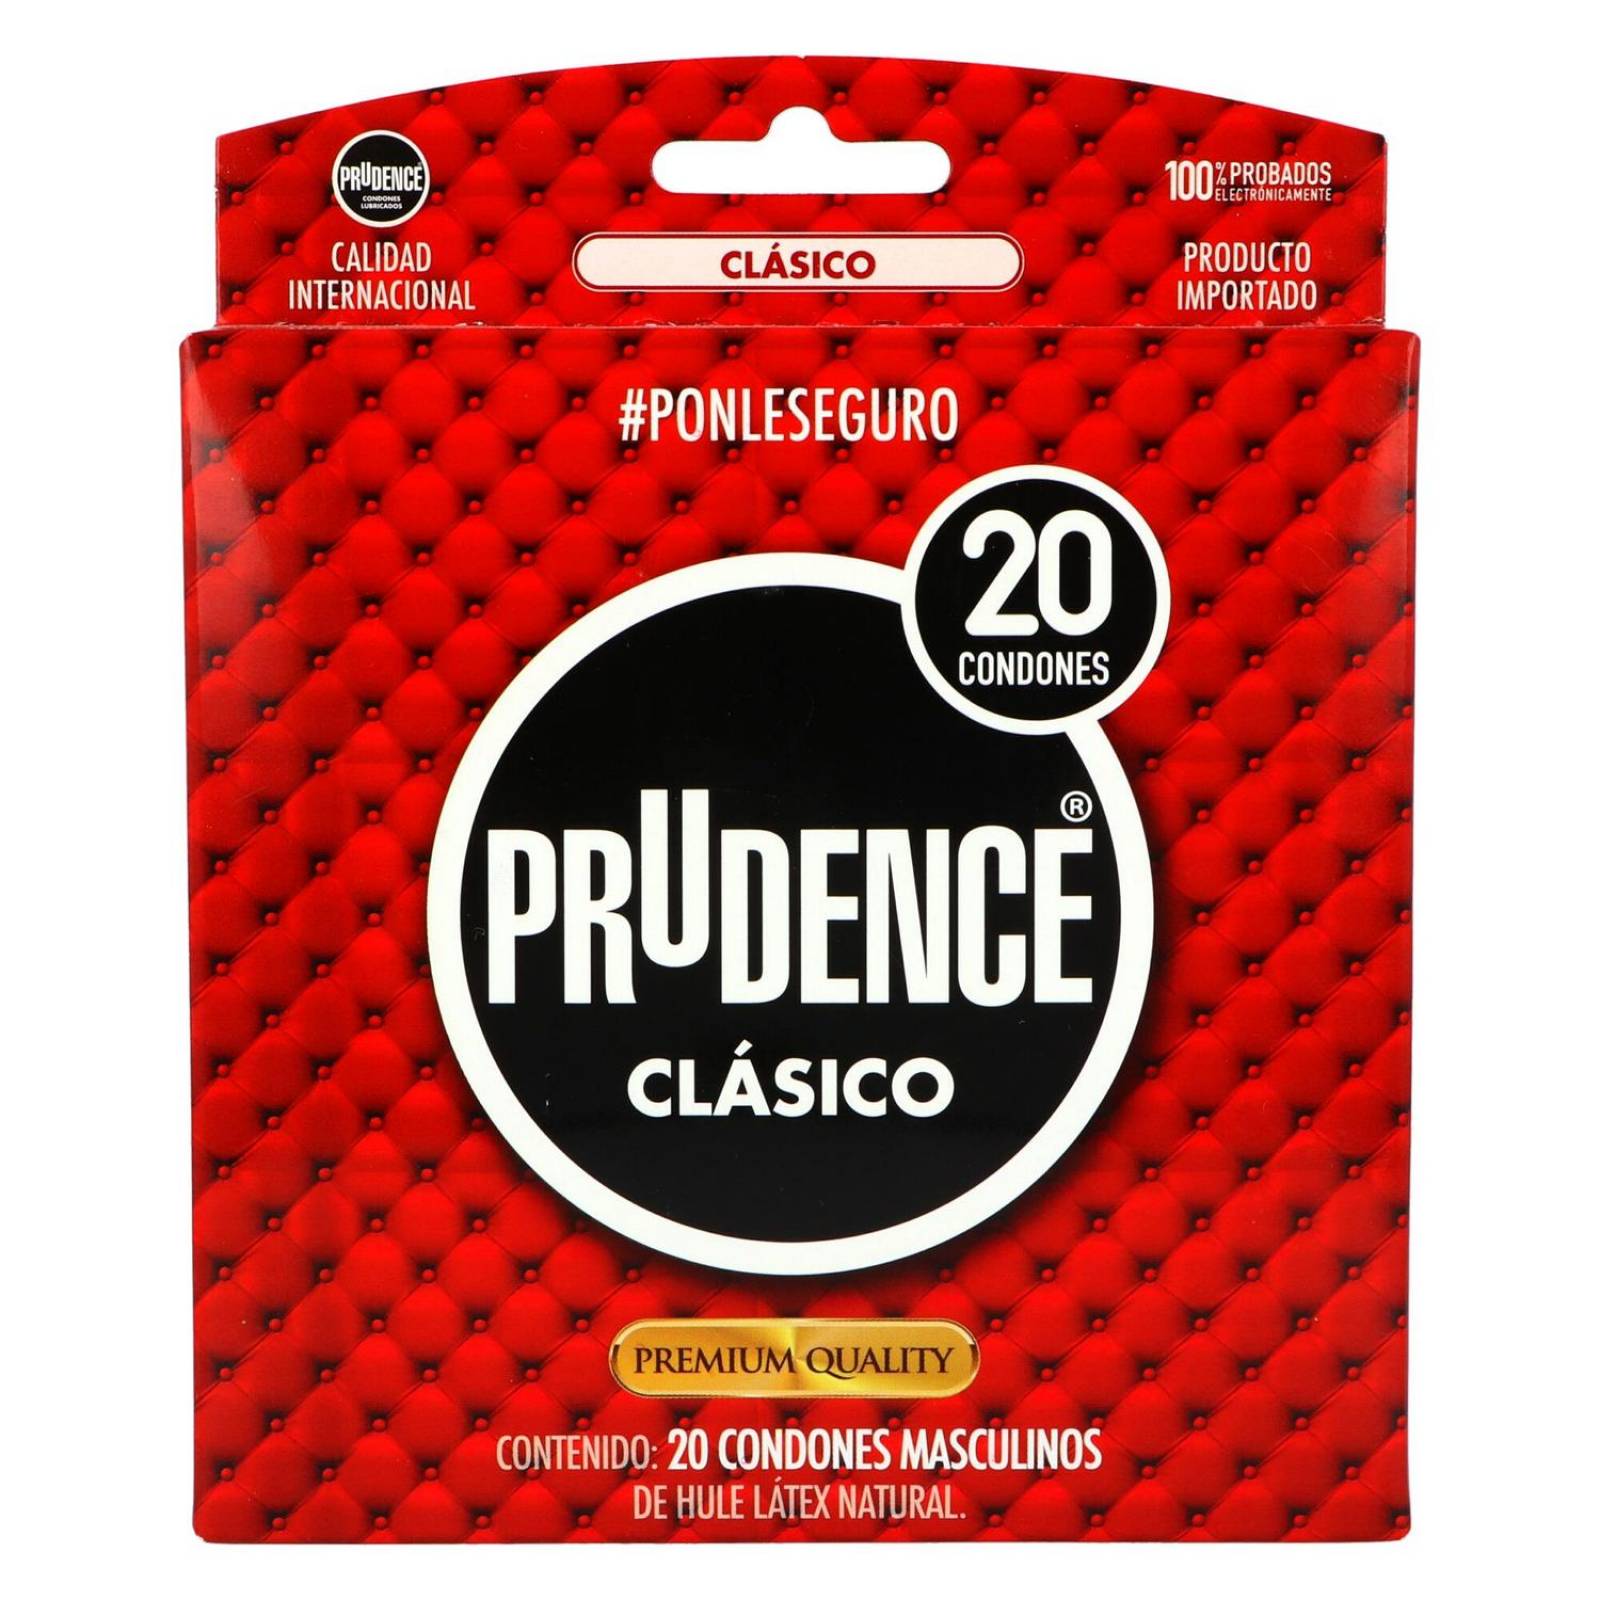 Prudence Clasico Caja Con 20 Condones 